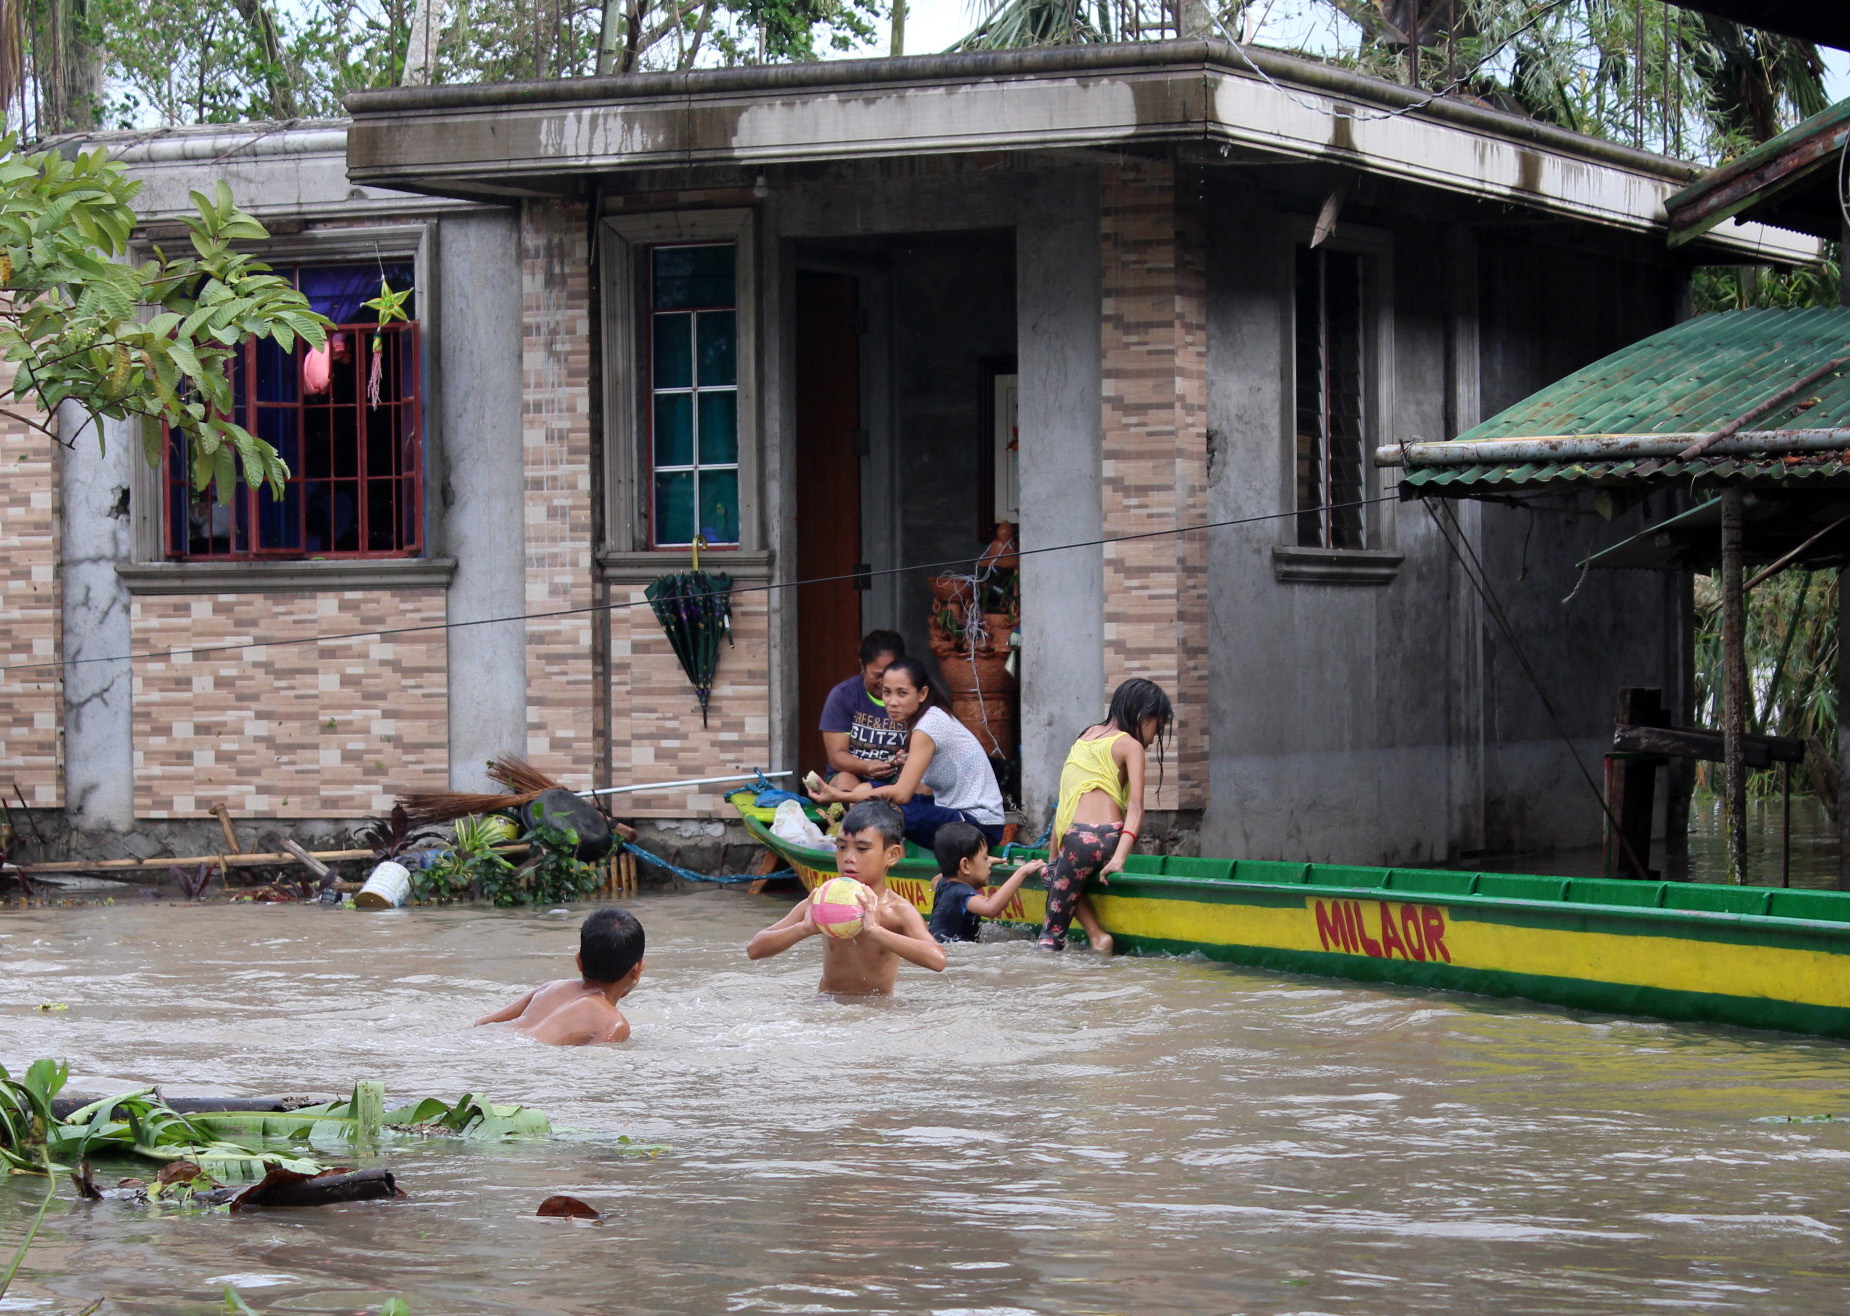 Късно в понеделник вечер тайфунът Камури удари Филипините със силни дъждове, които наводниха столицата в Манила. Според вестник "Филипинска звезда" броят на евакуираните в страната надхвърли 225 хиляди души.